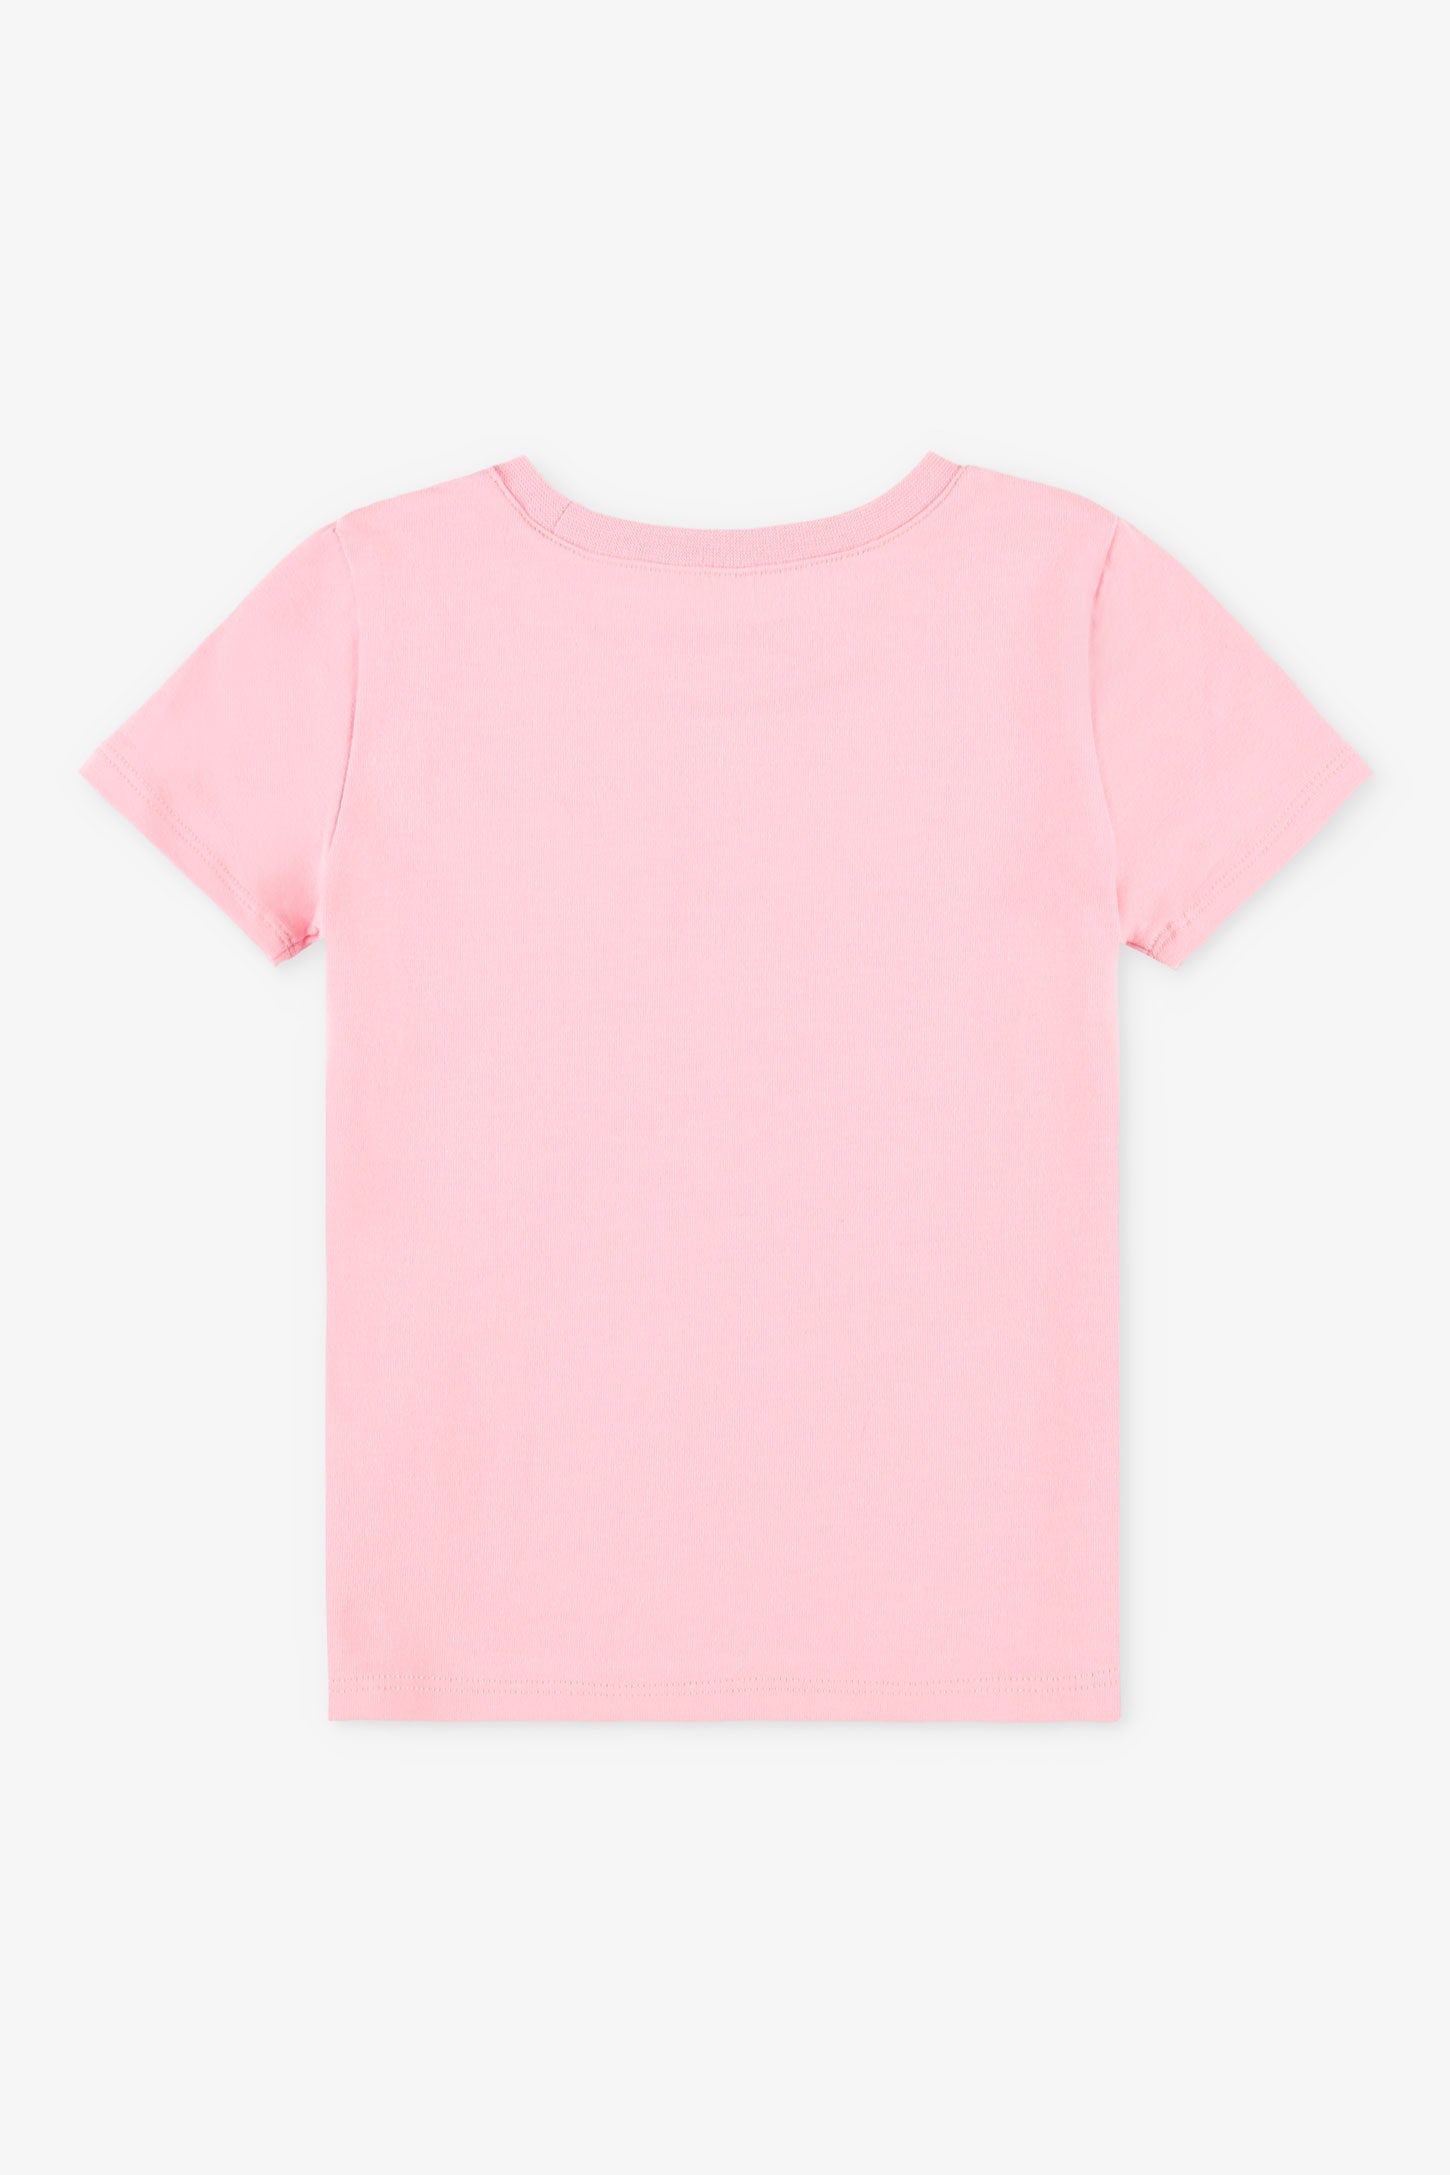 Duos futés, T-shirt à poche, 2T-3T, 2/20$ - Bébé fille && ROSE PALE